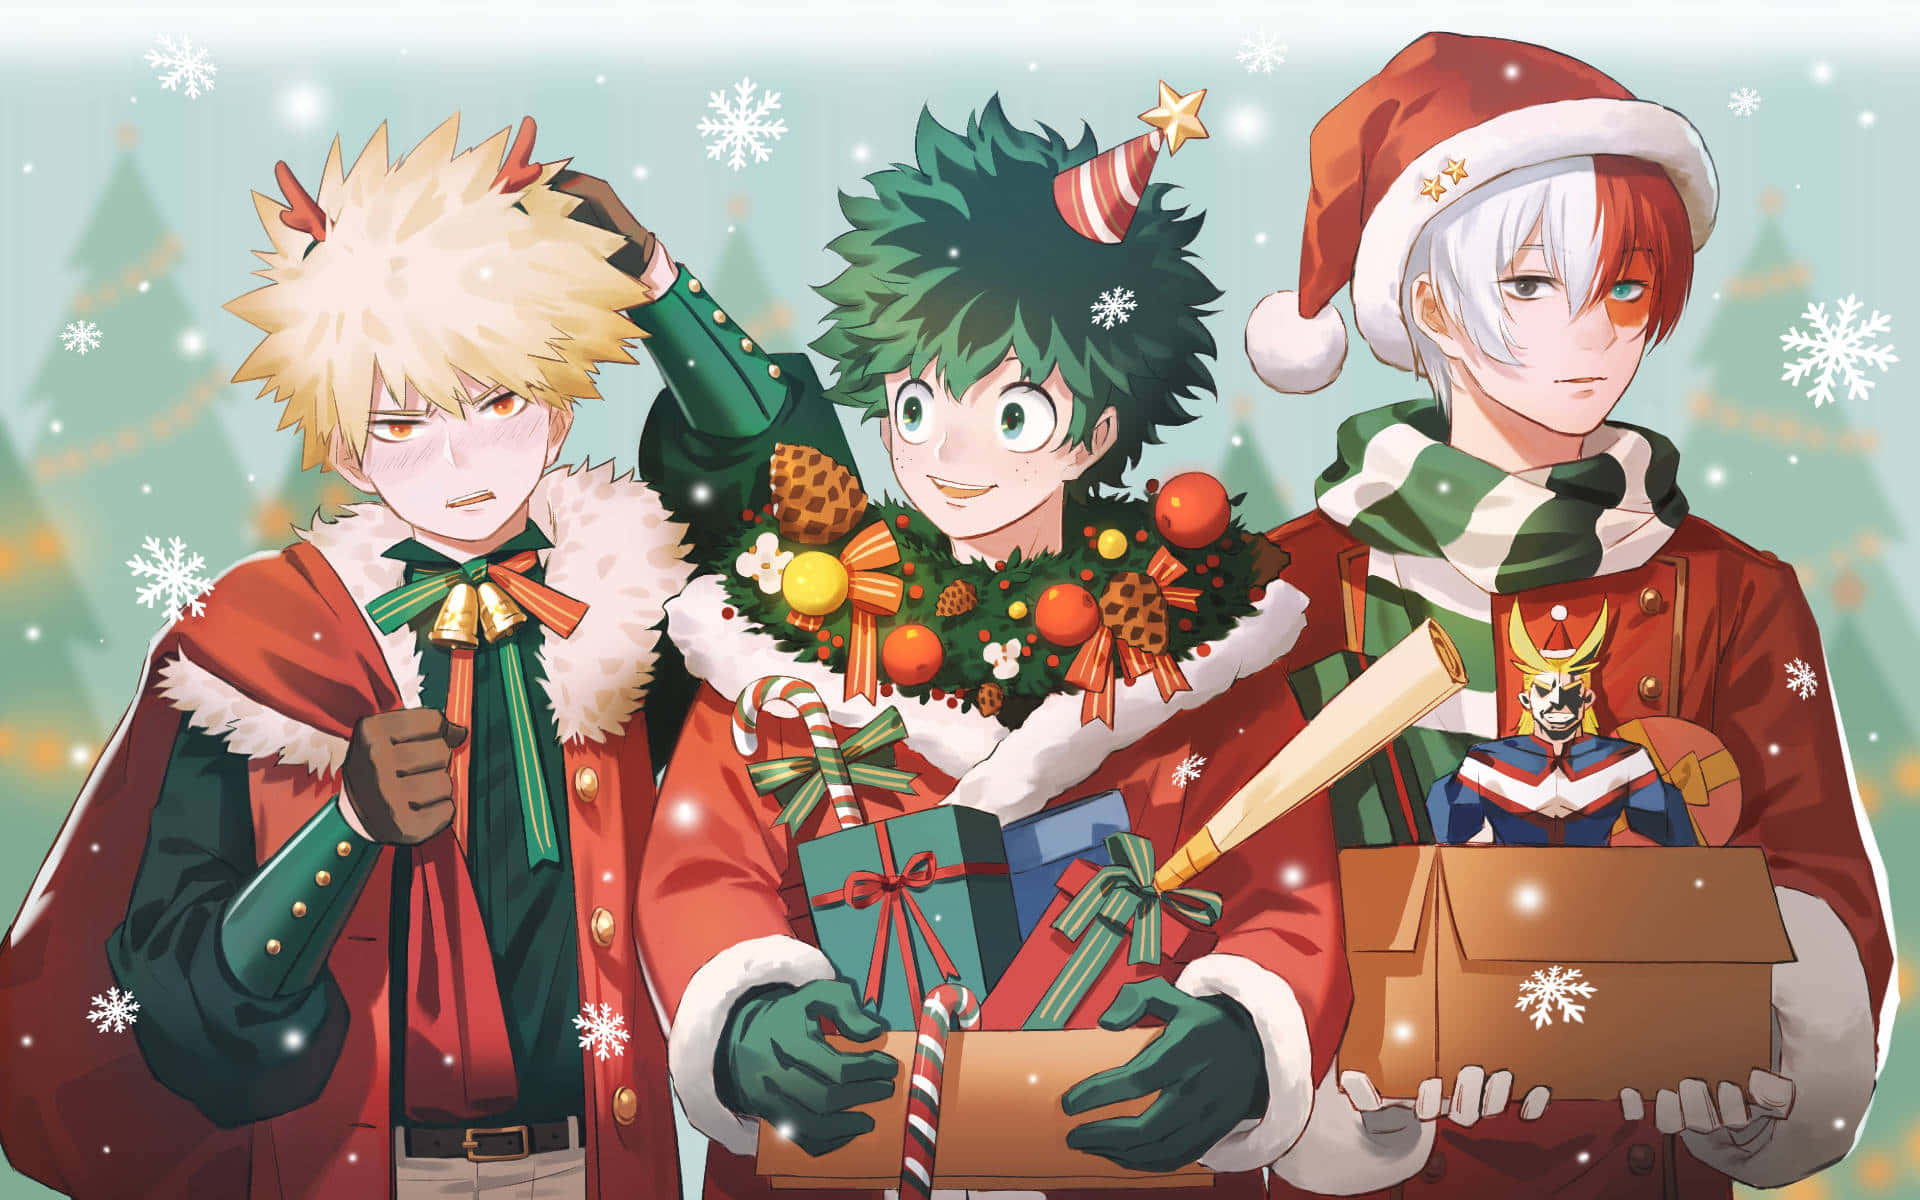 An Uplifting Anime Christmas